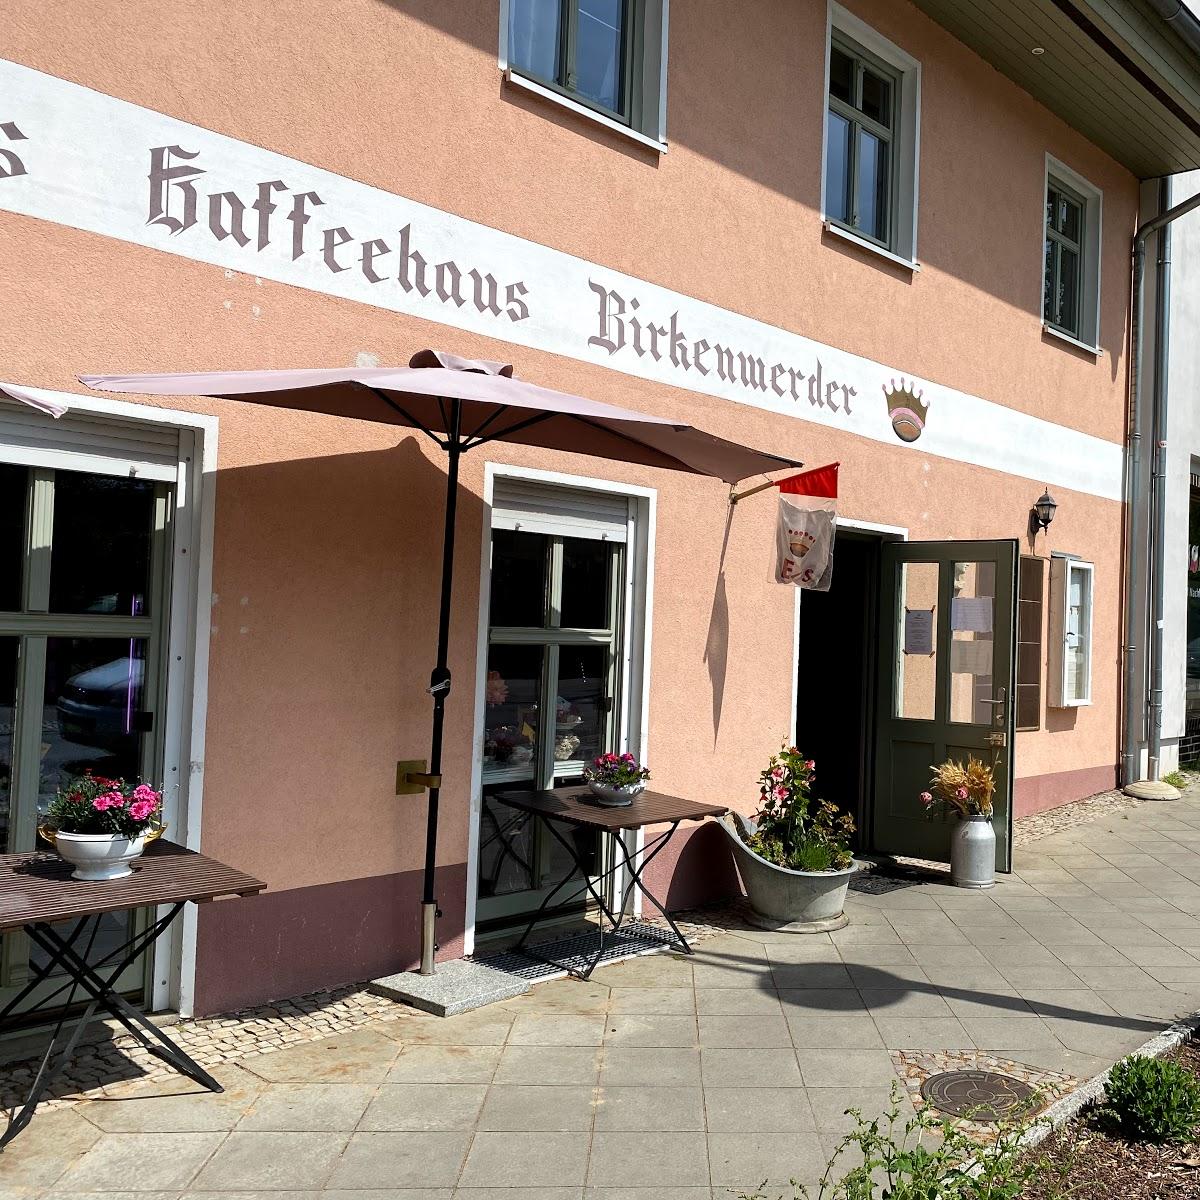 Restaurant "Kaffeehaus" in Birkenwerder